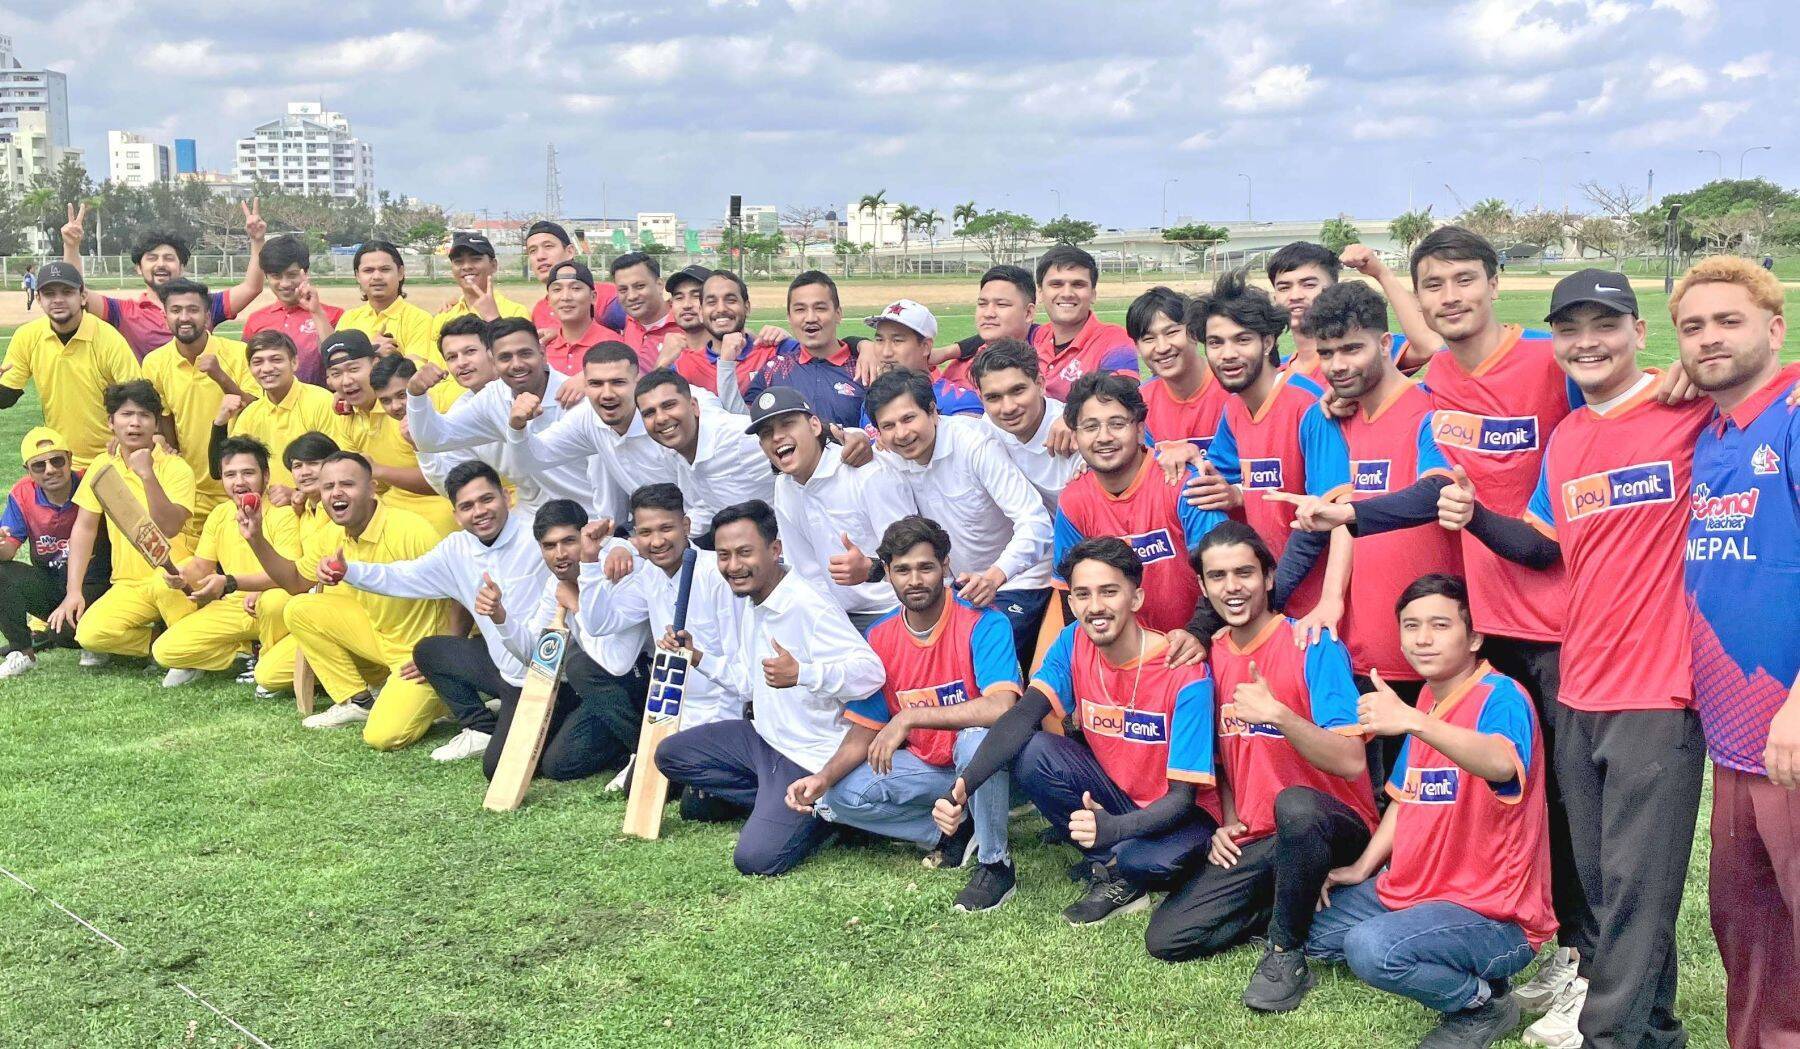 世界的に競技人口の多いクリケット　沖縄に住むネパール人が初の大会「顔を合わせるだけでも楽しい」　協会設立から3年　4チームが2日間リーグ戦